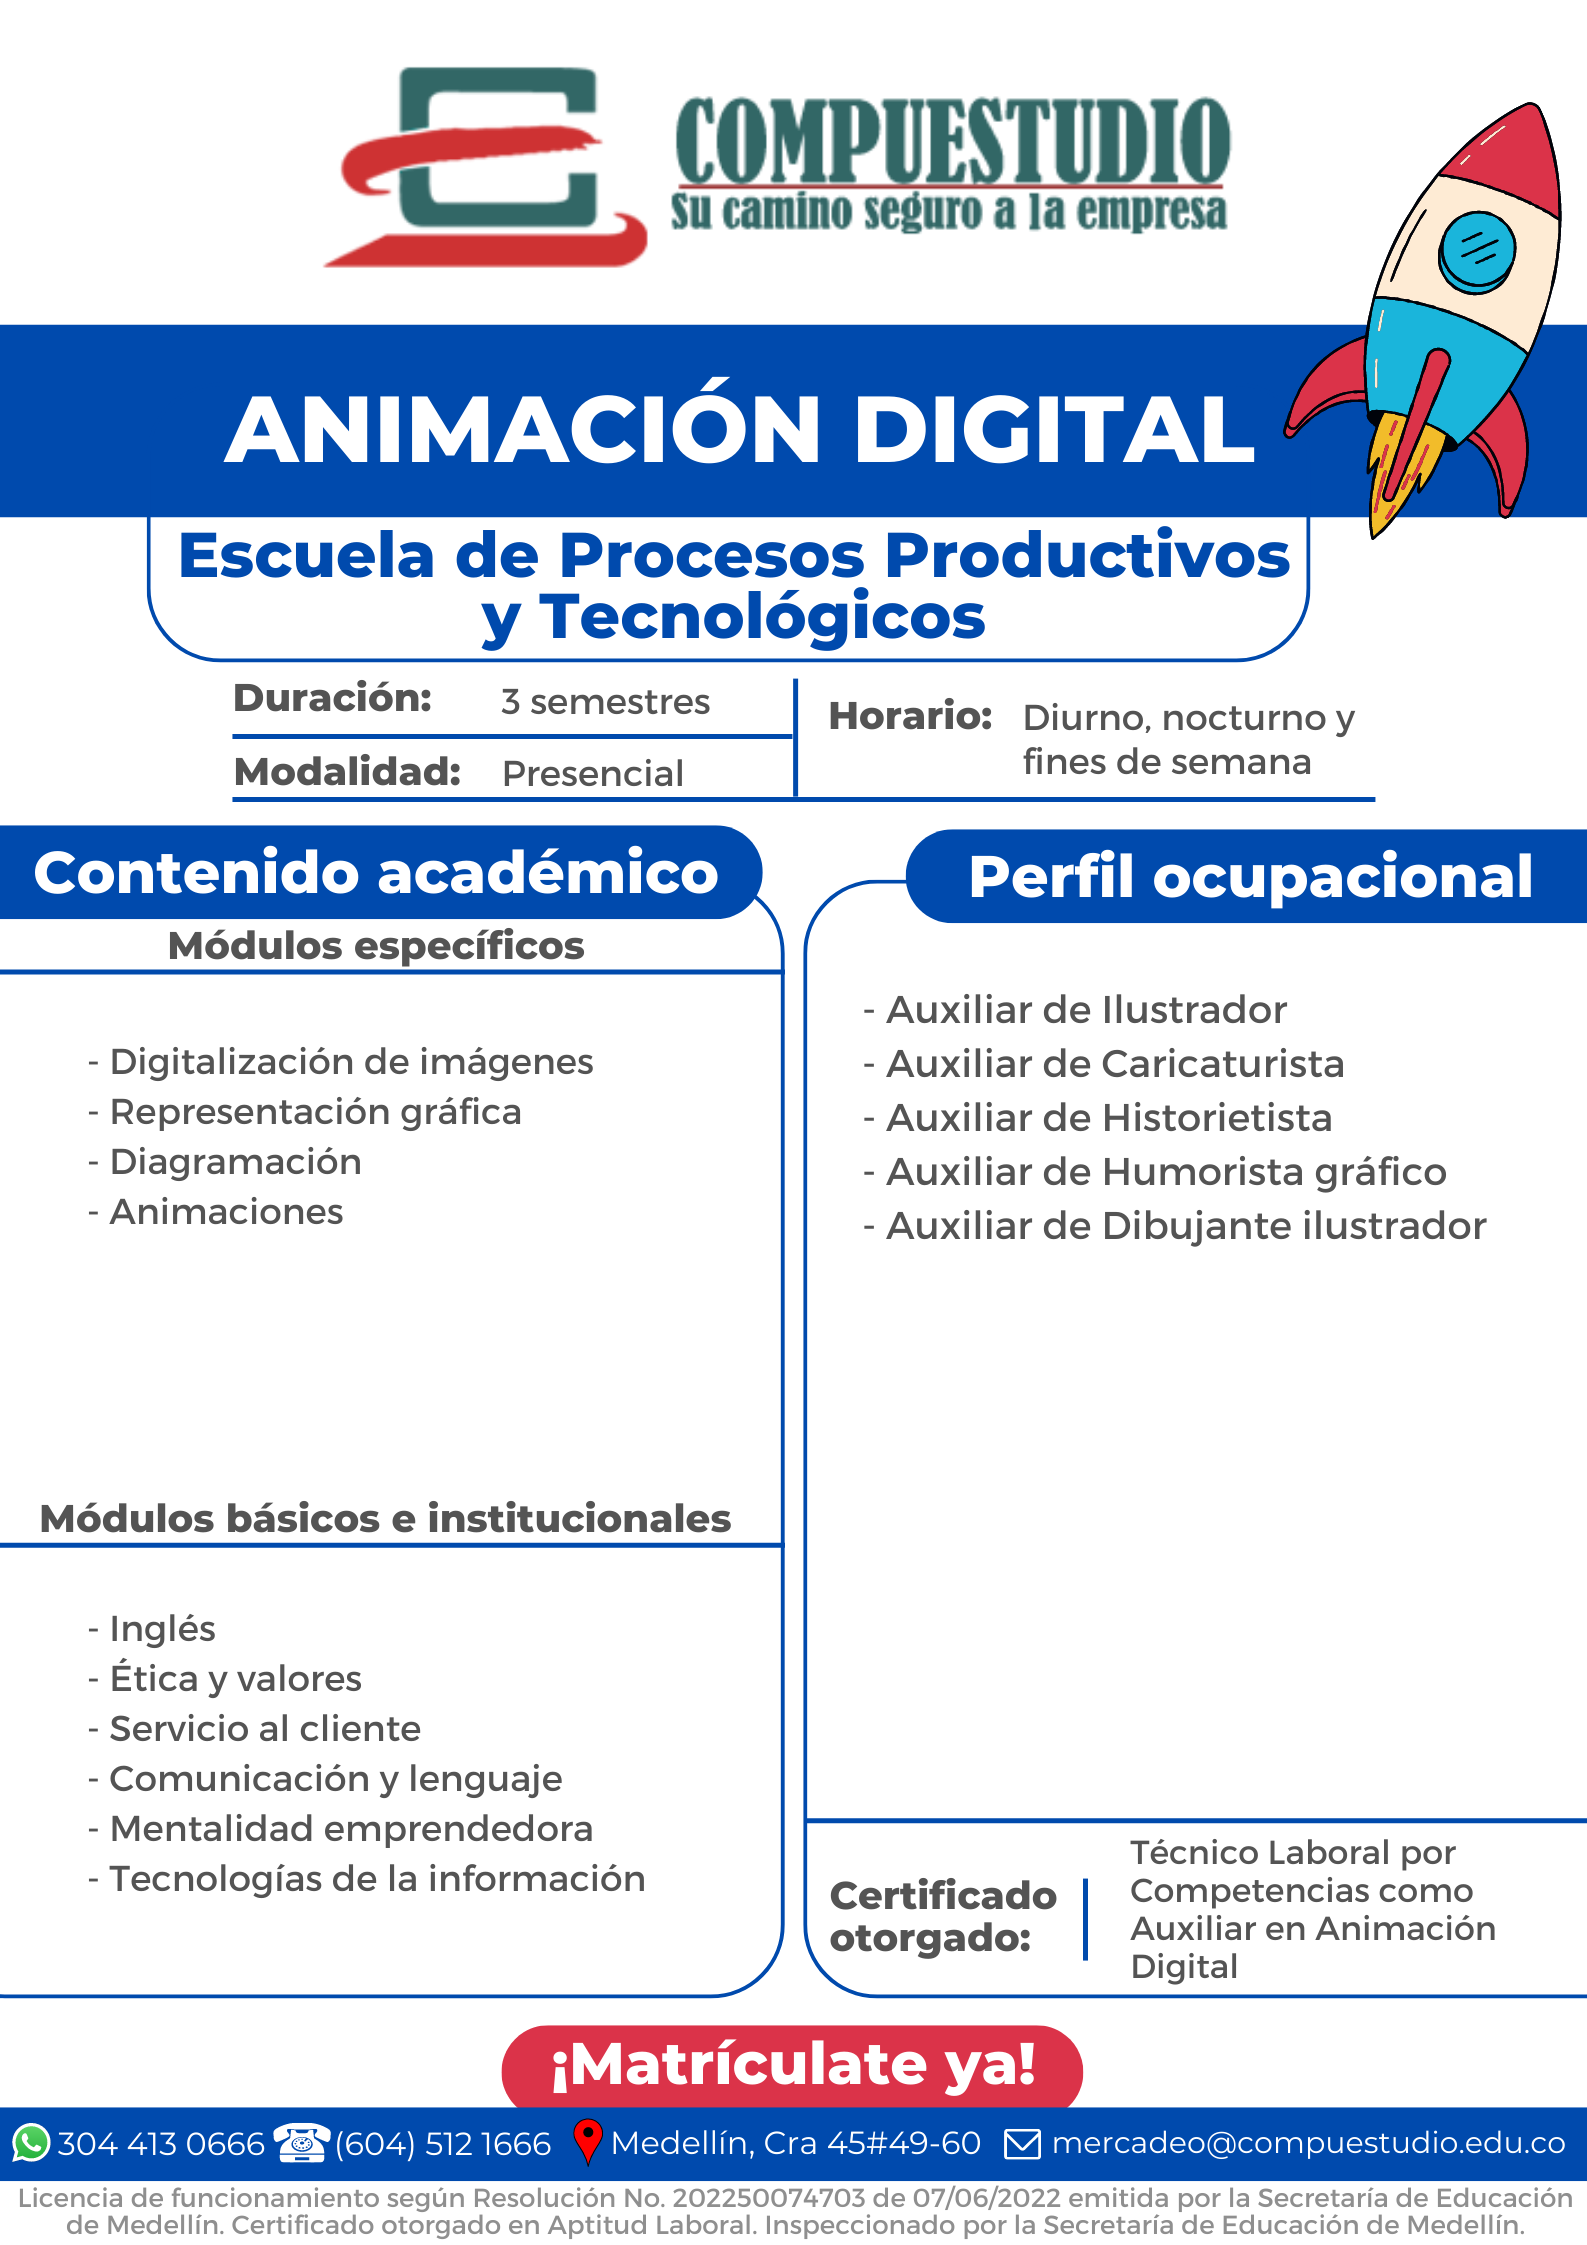 Técnico en Animación Digital Medellín compuestudio